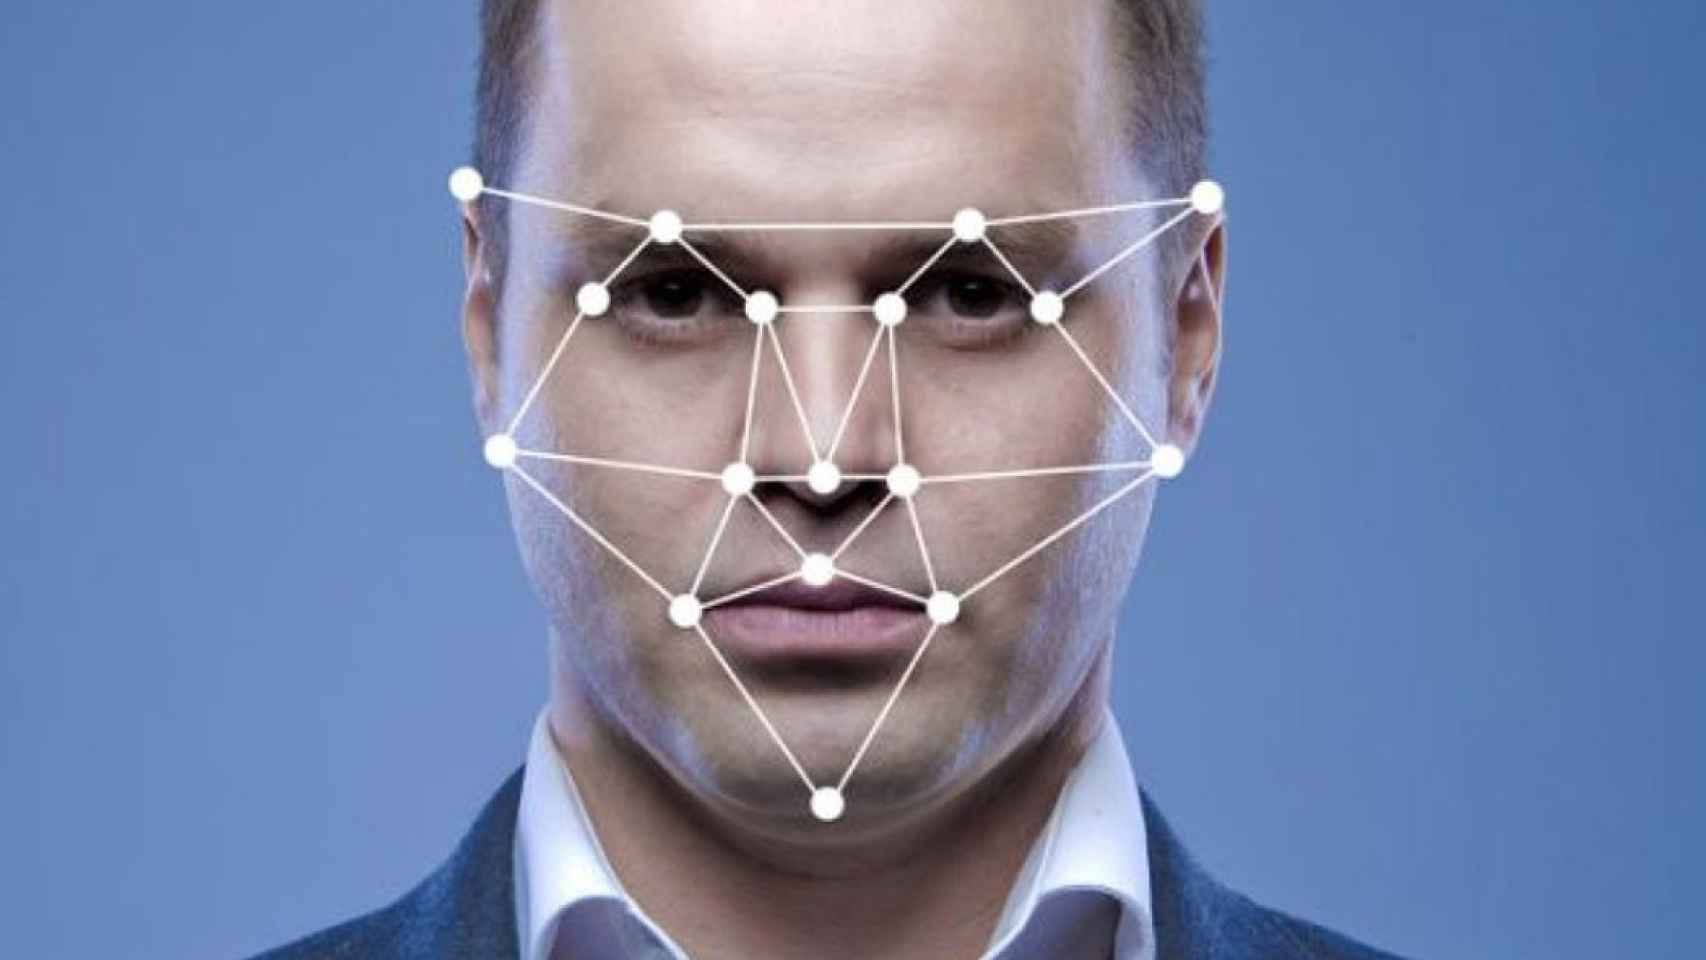 inteligencia artificial reconocimiento facial